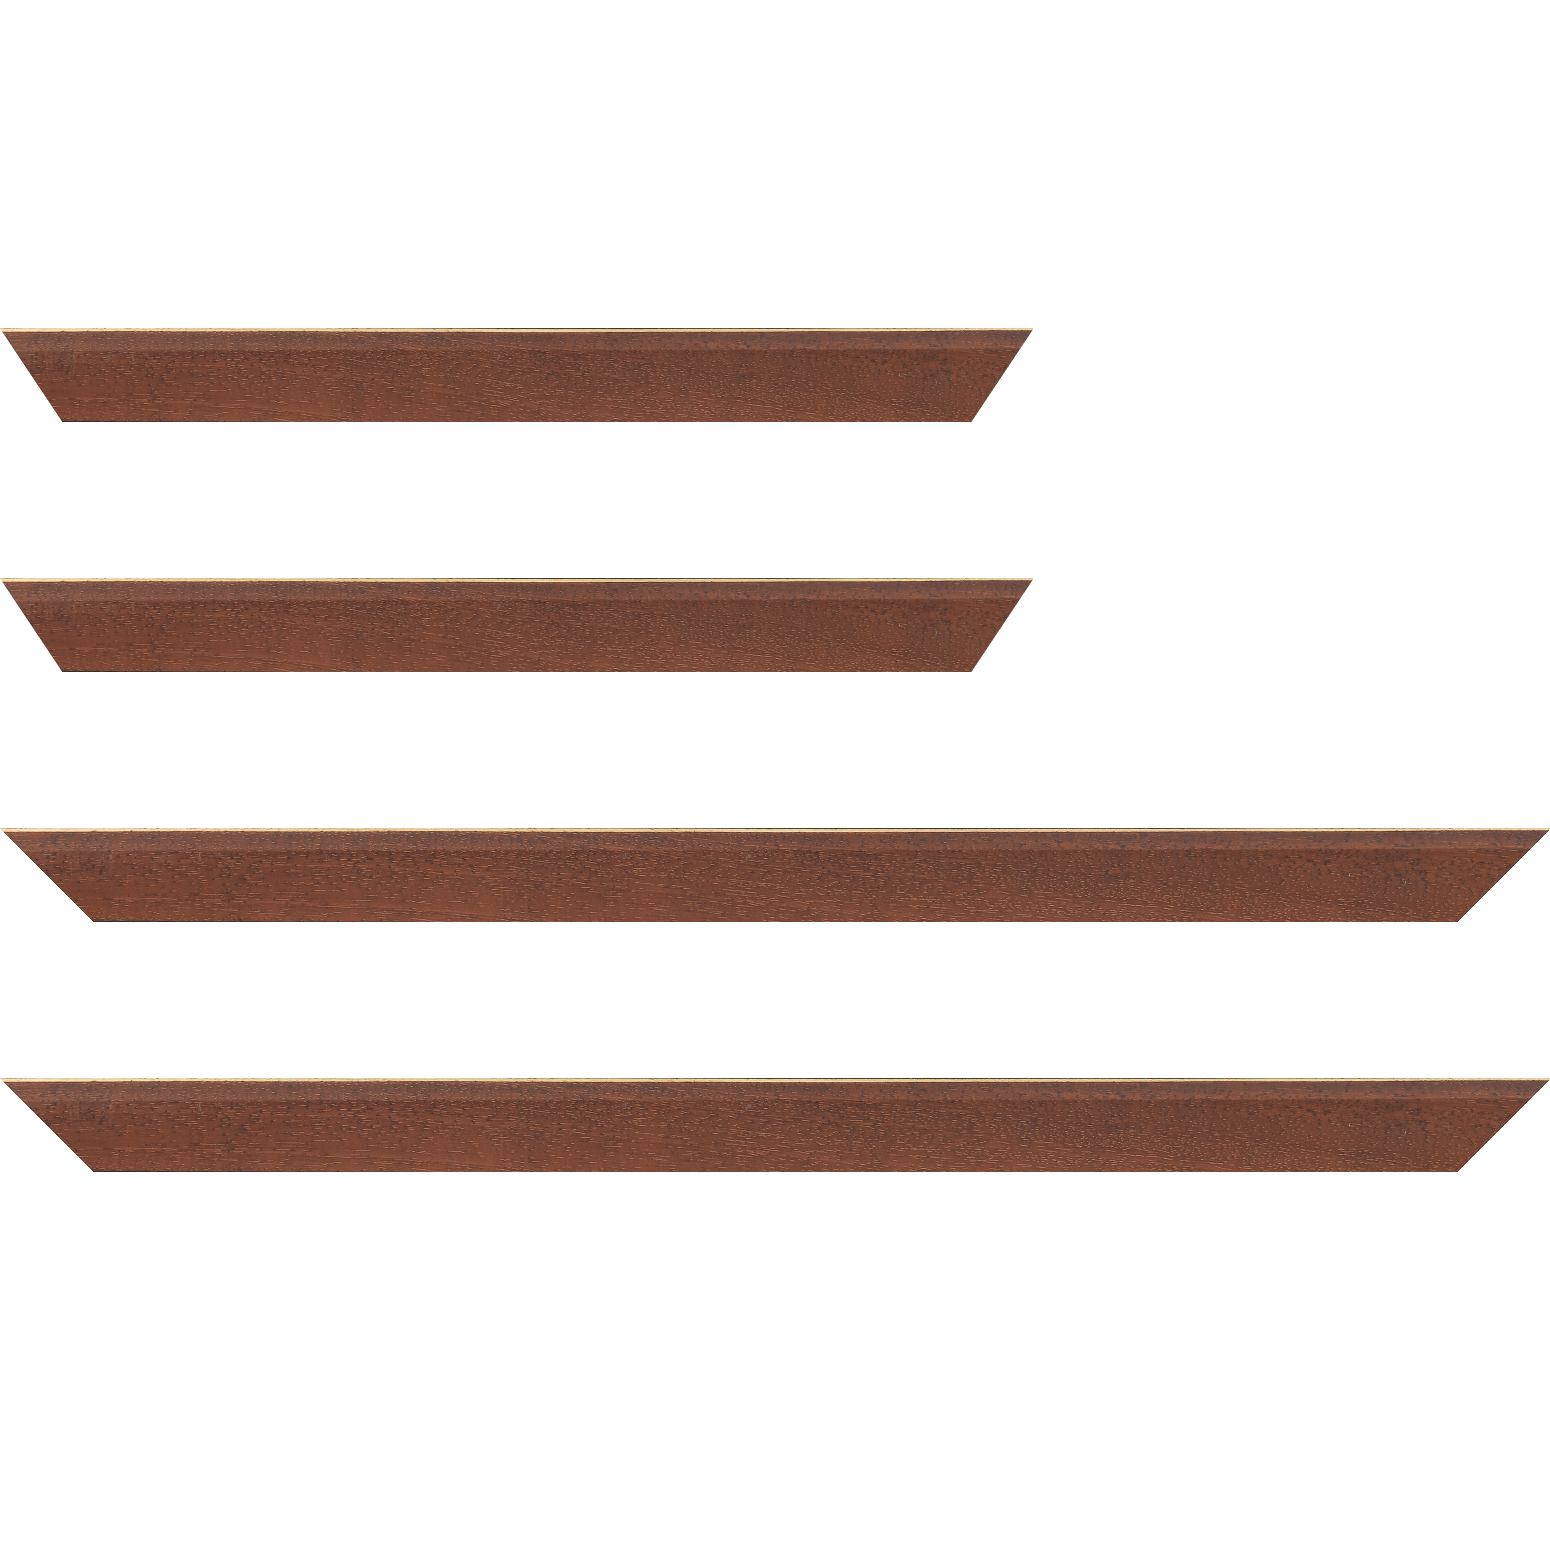 Baguette bois profil plat escalier largeur 3cm couleur marron miel satiné filet créme extérieur - 40x60